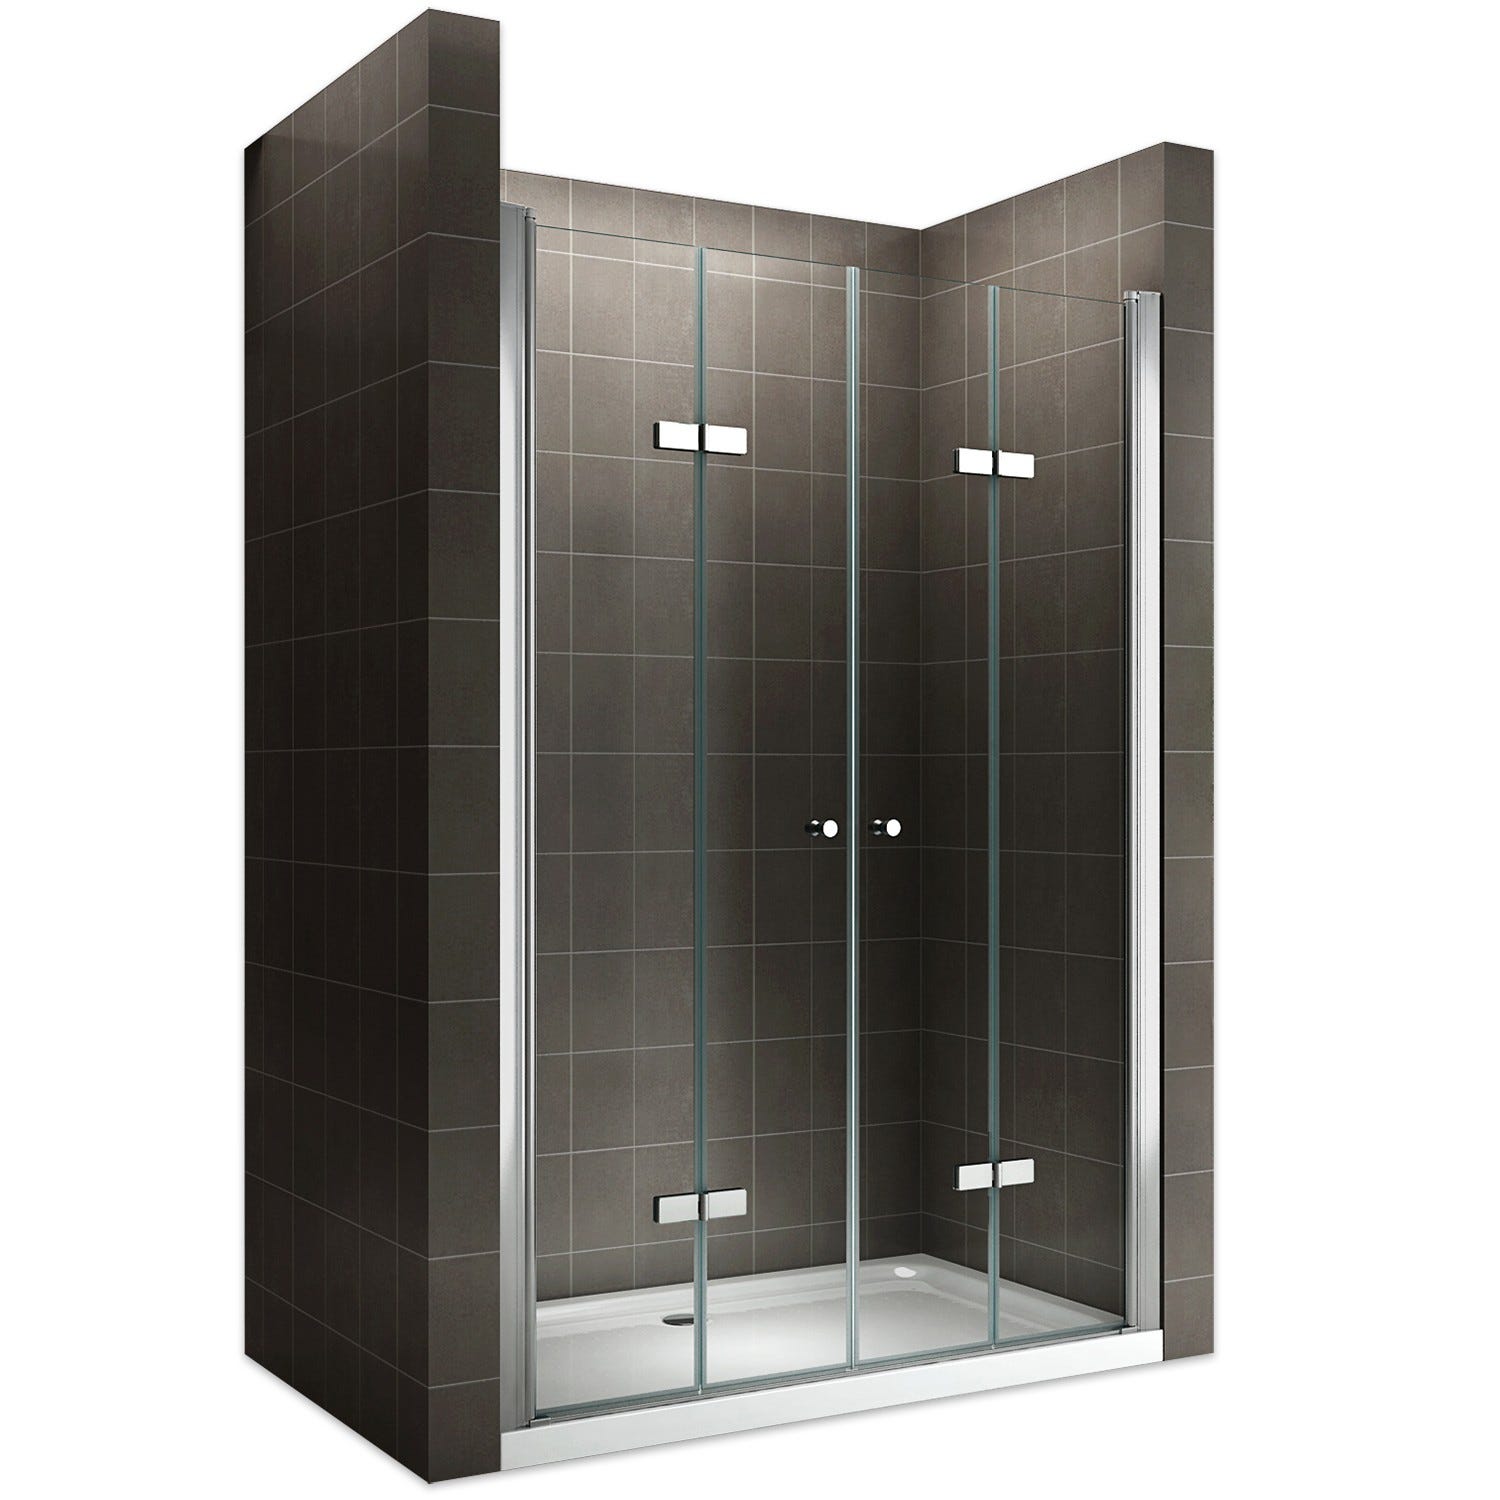 EMMY Porte de douche pliante pivotante H 185 cm largeur réglable 140 à 144 cm verre transparent 0